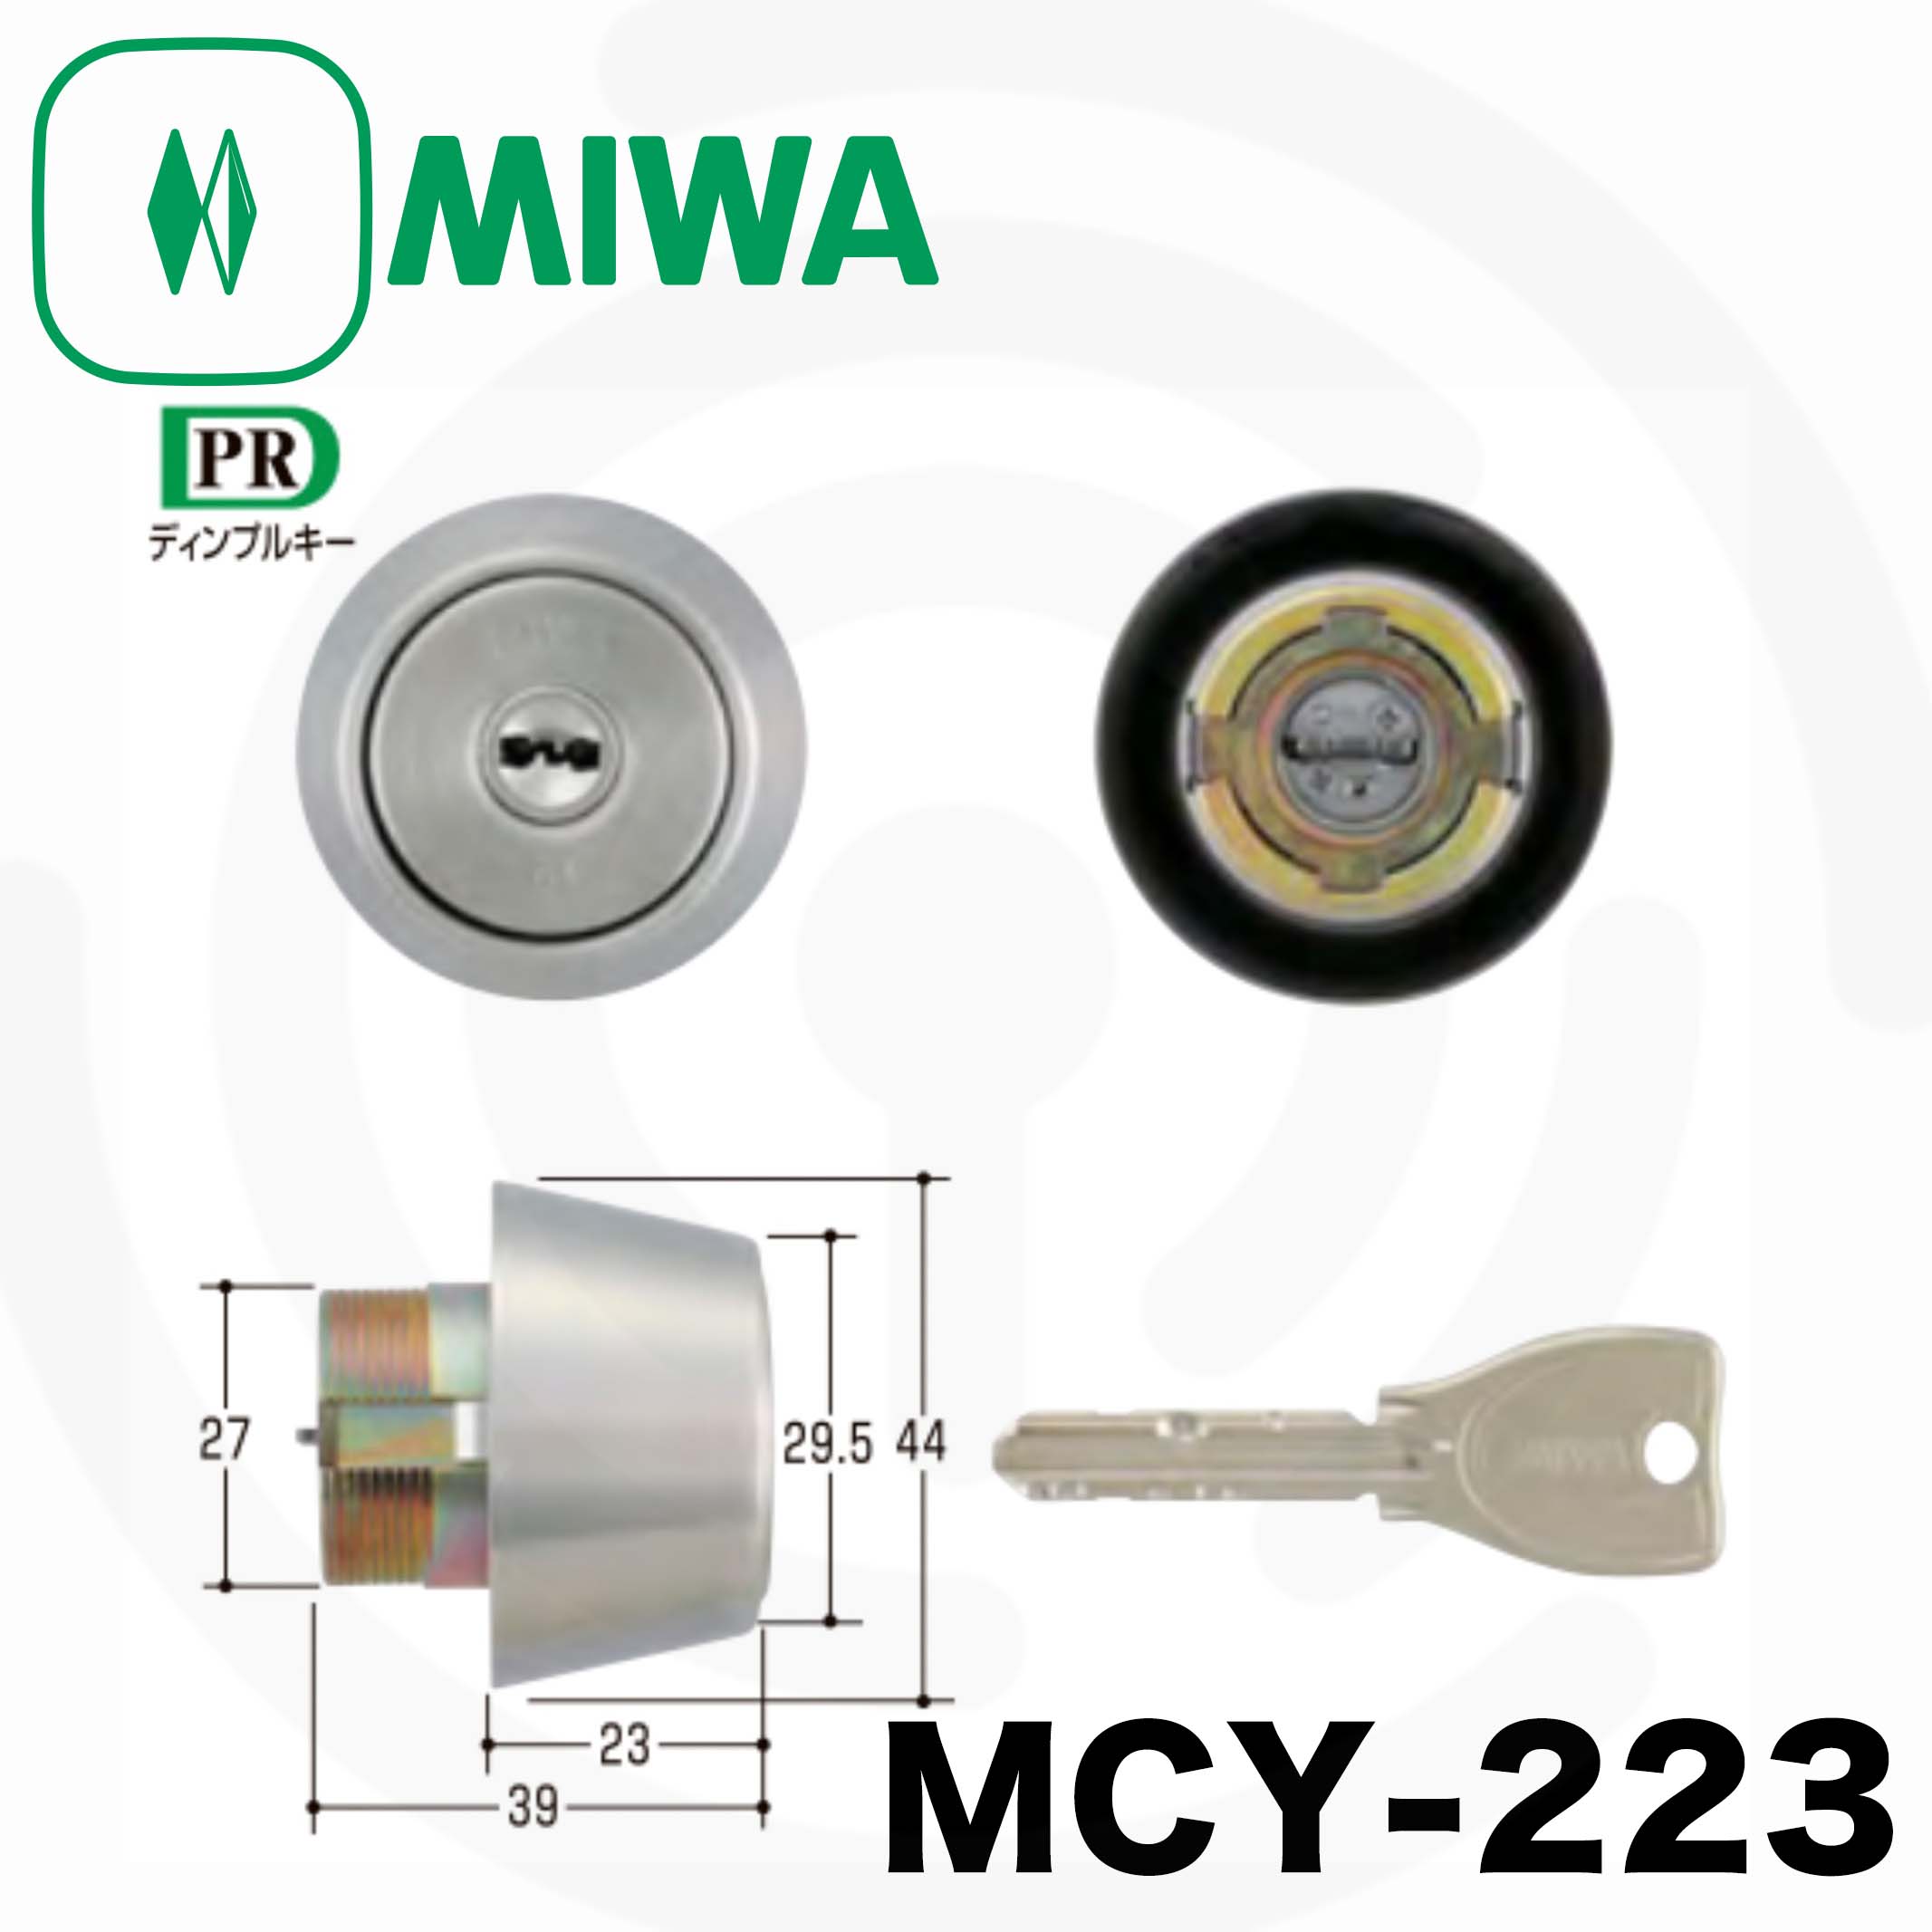 MIWA(美和ロック) U9シリンダー LIX(TE0)タイプ LSP(TE22)タイプ 鍵 交換 取替え 2個同一セット MCY-402ス - 3